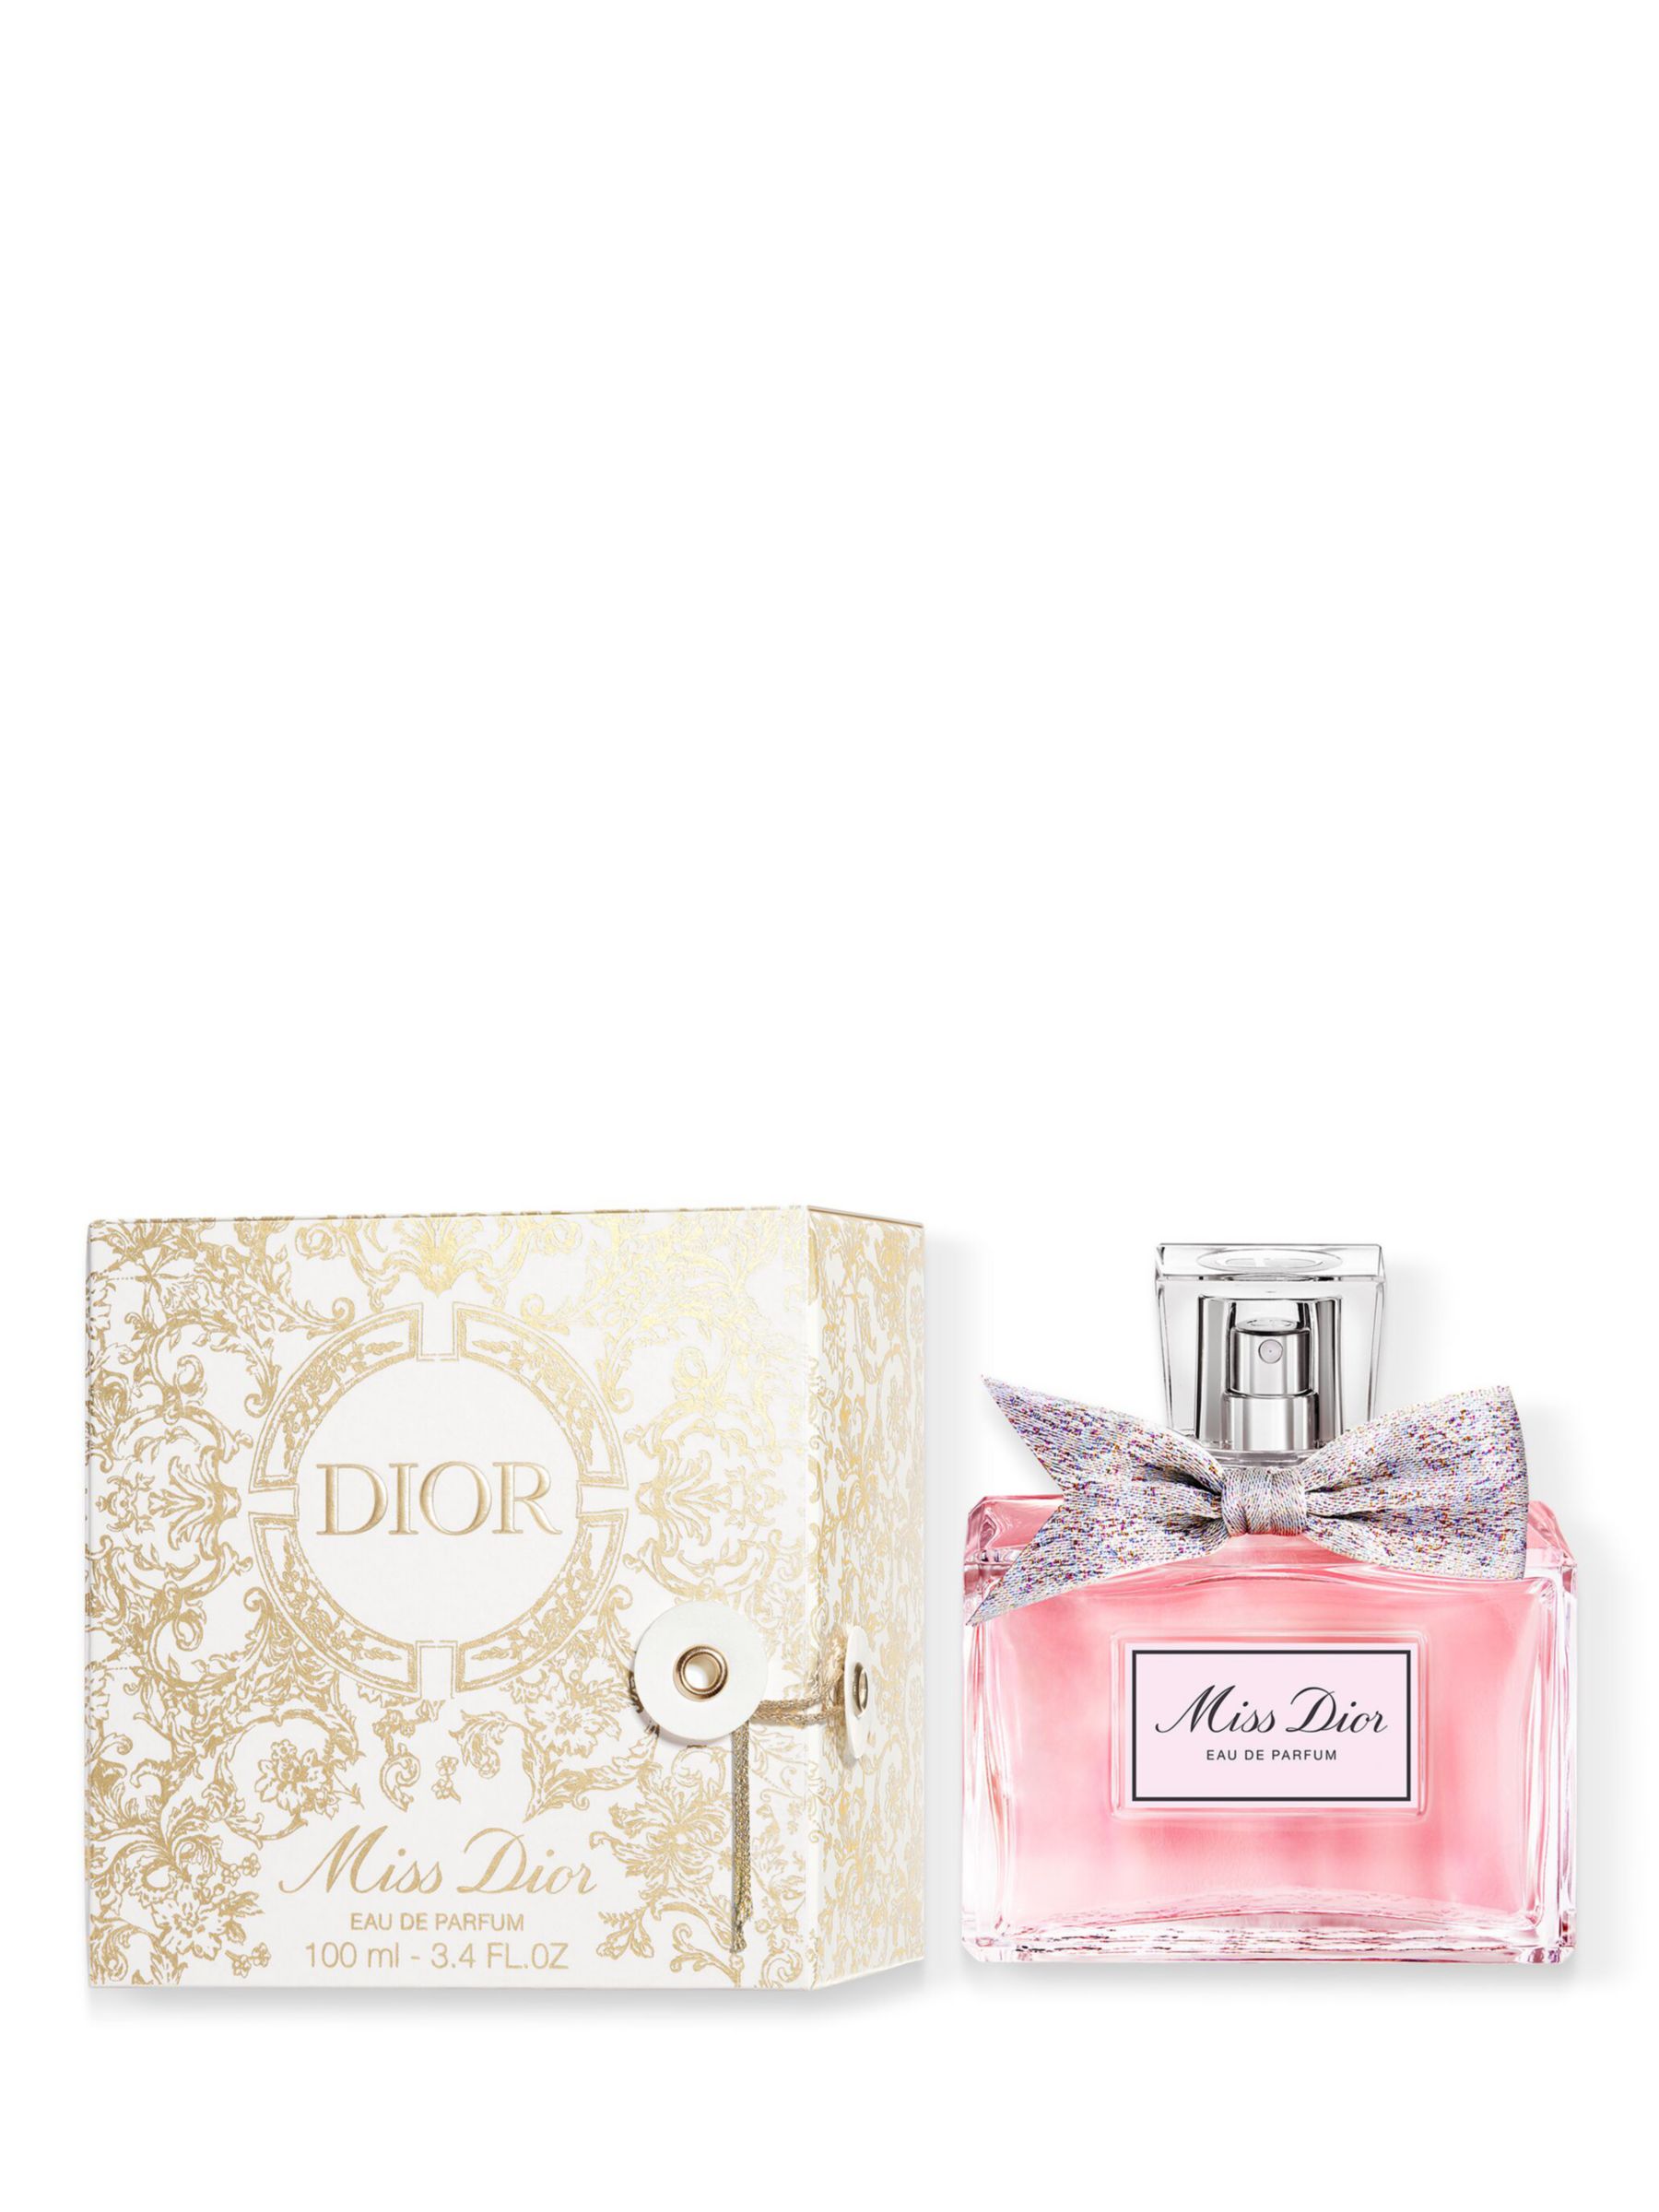 Christian Dior Miss Dior Spray Blooming Bouquet Eau De Toilette - 100 ml /  3.4 oz 